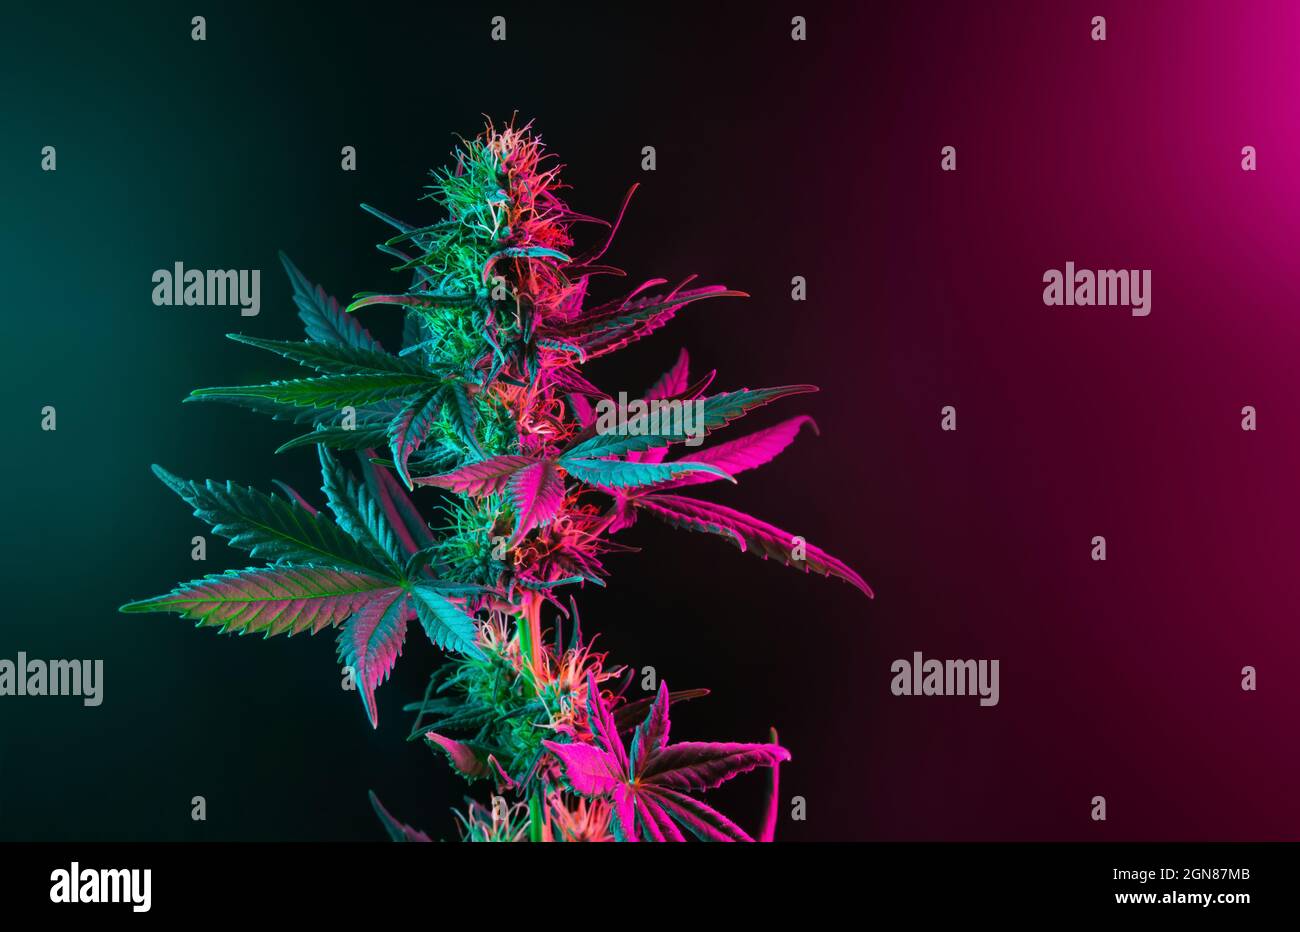 Pianta di cannabis con foglie colorate in rosa neon viola e luci verdi su sfondo scuro. Fotografia estetica della cannabis. Nuovo look moderno sulla marijua Foto Stock